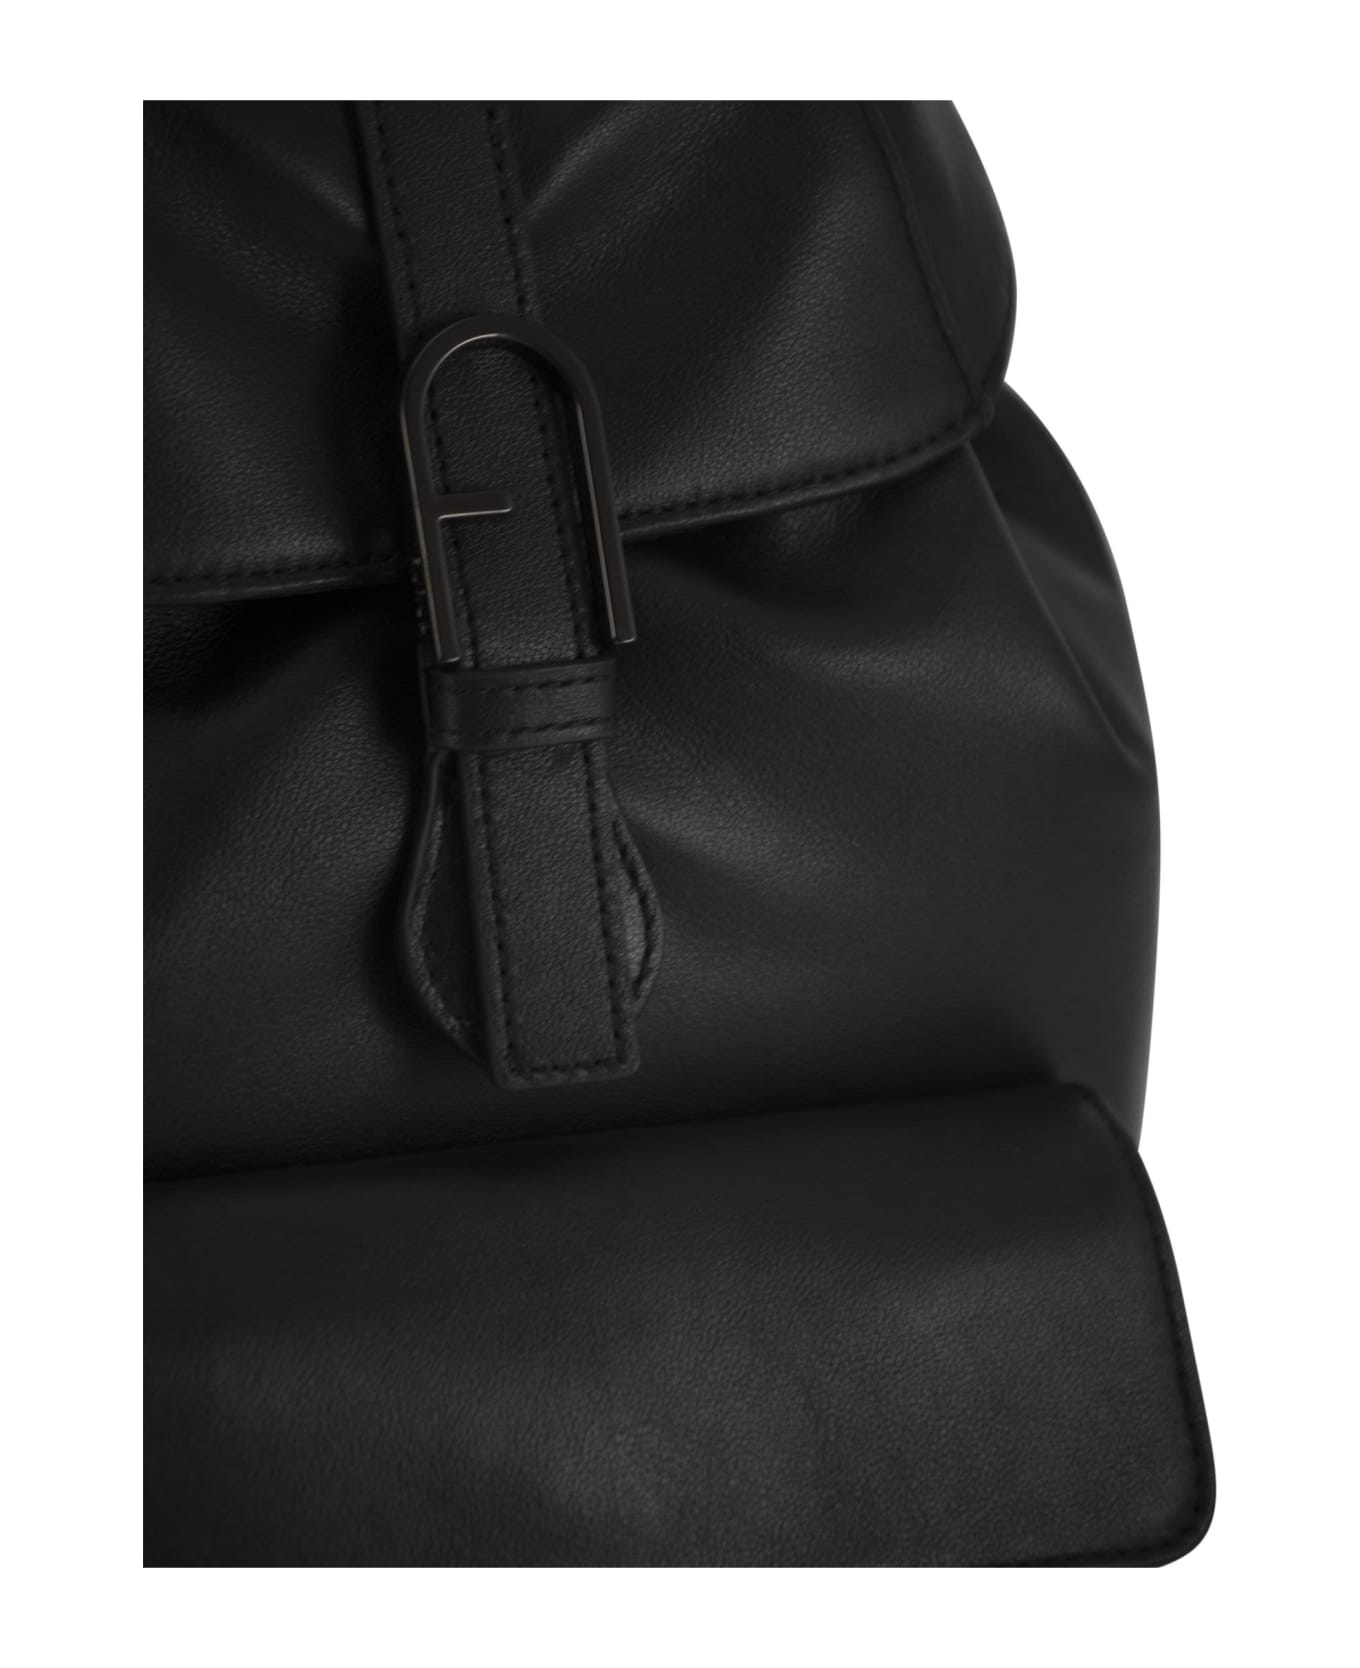 Furla Flow - Leather Backpack - Black